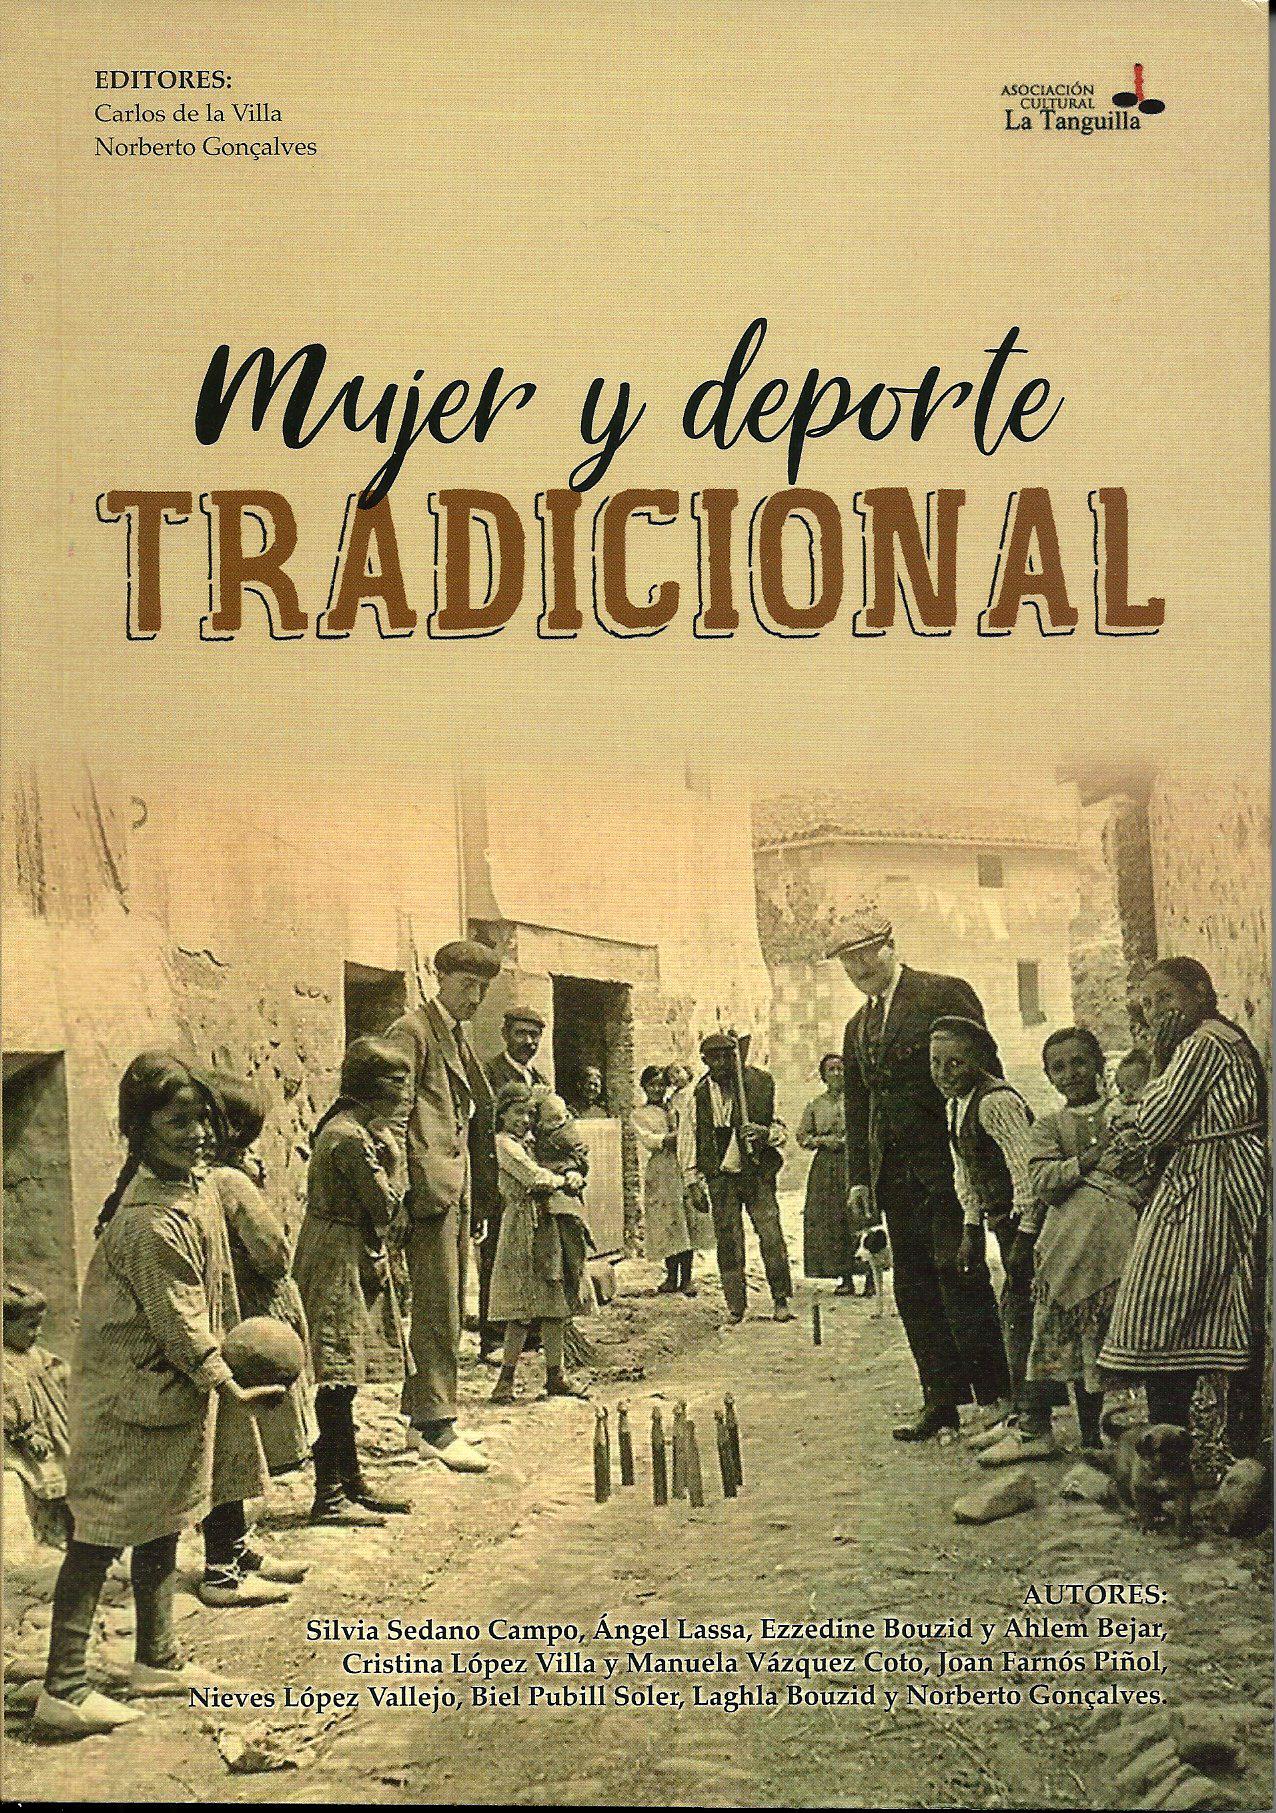 Carlos de la Villa, Norberto Gonçalves (editores), Mujer y deporte tradicional